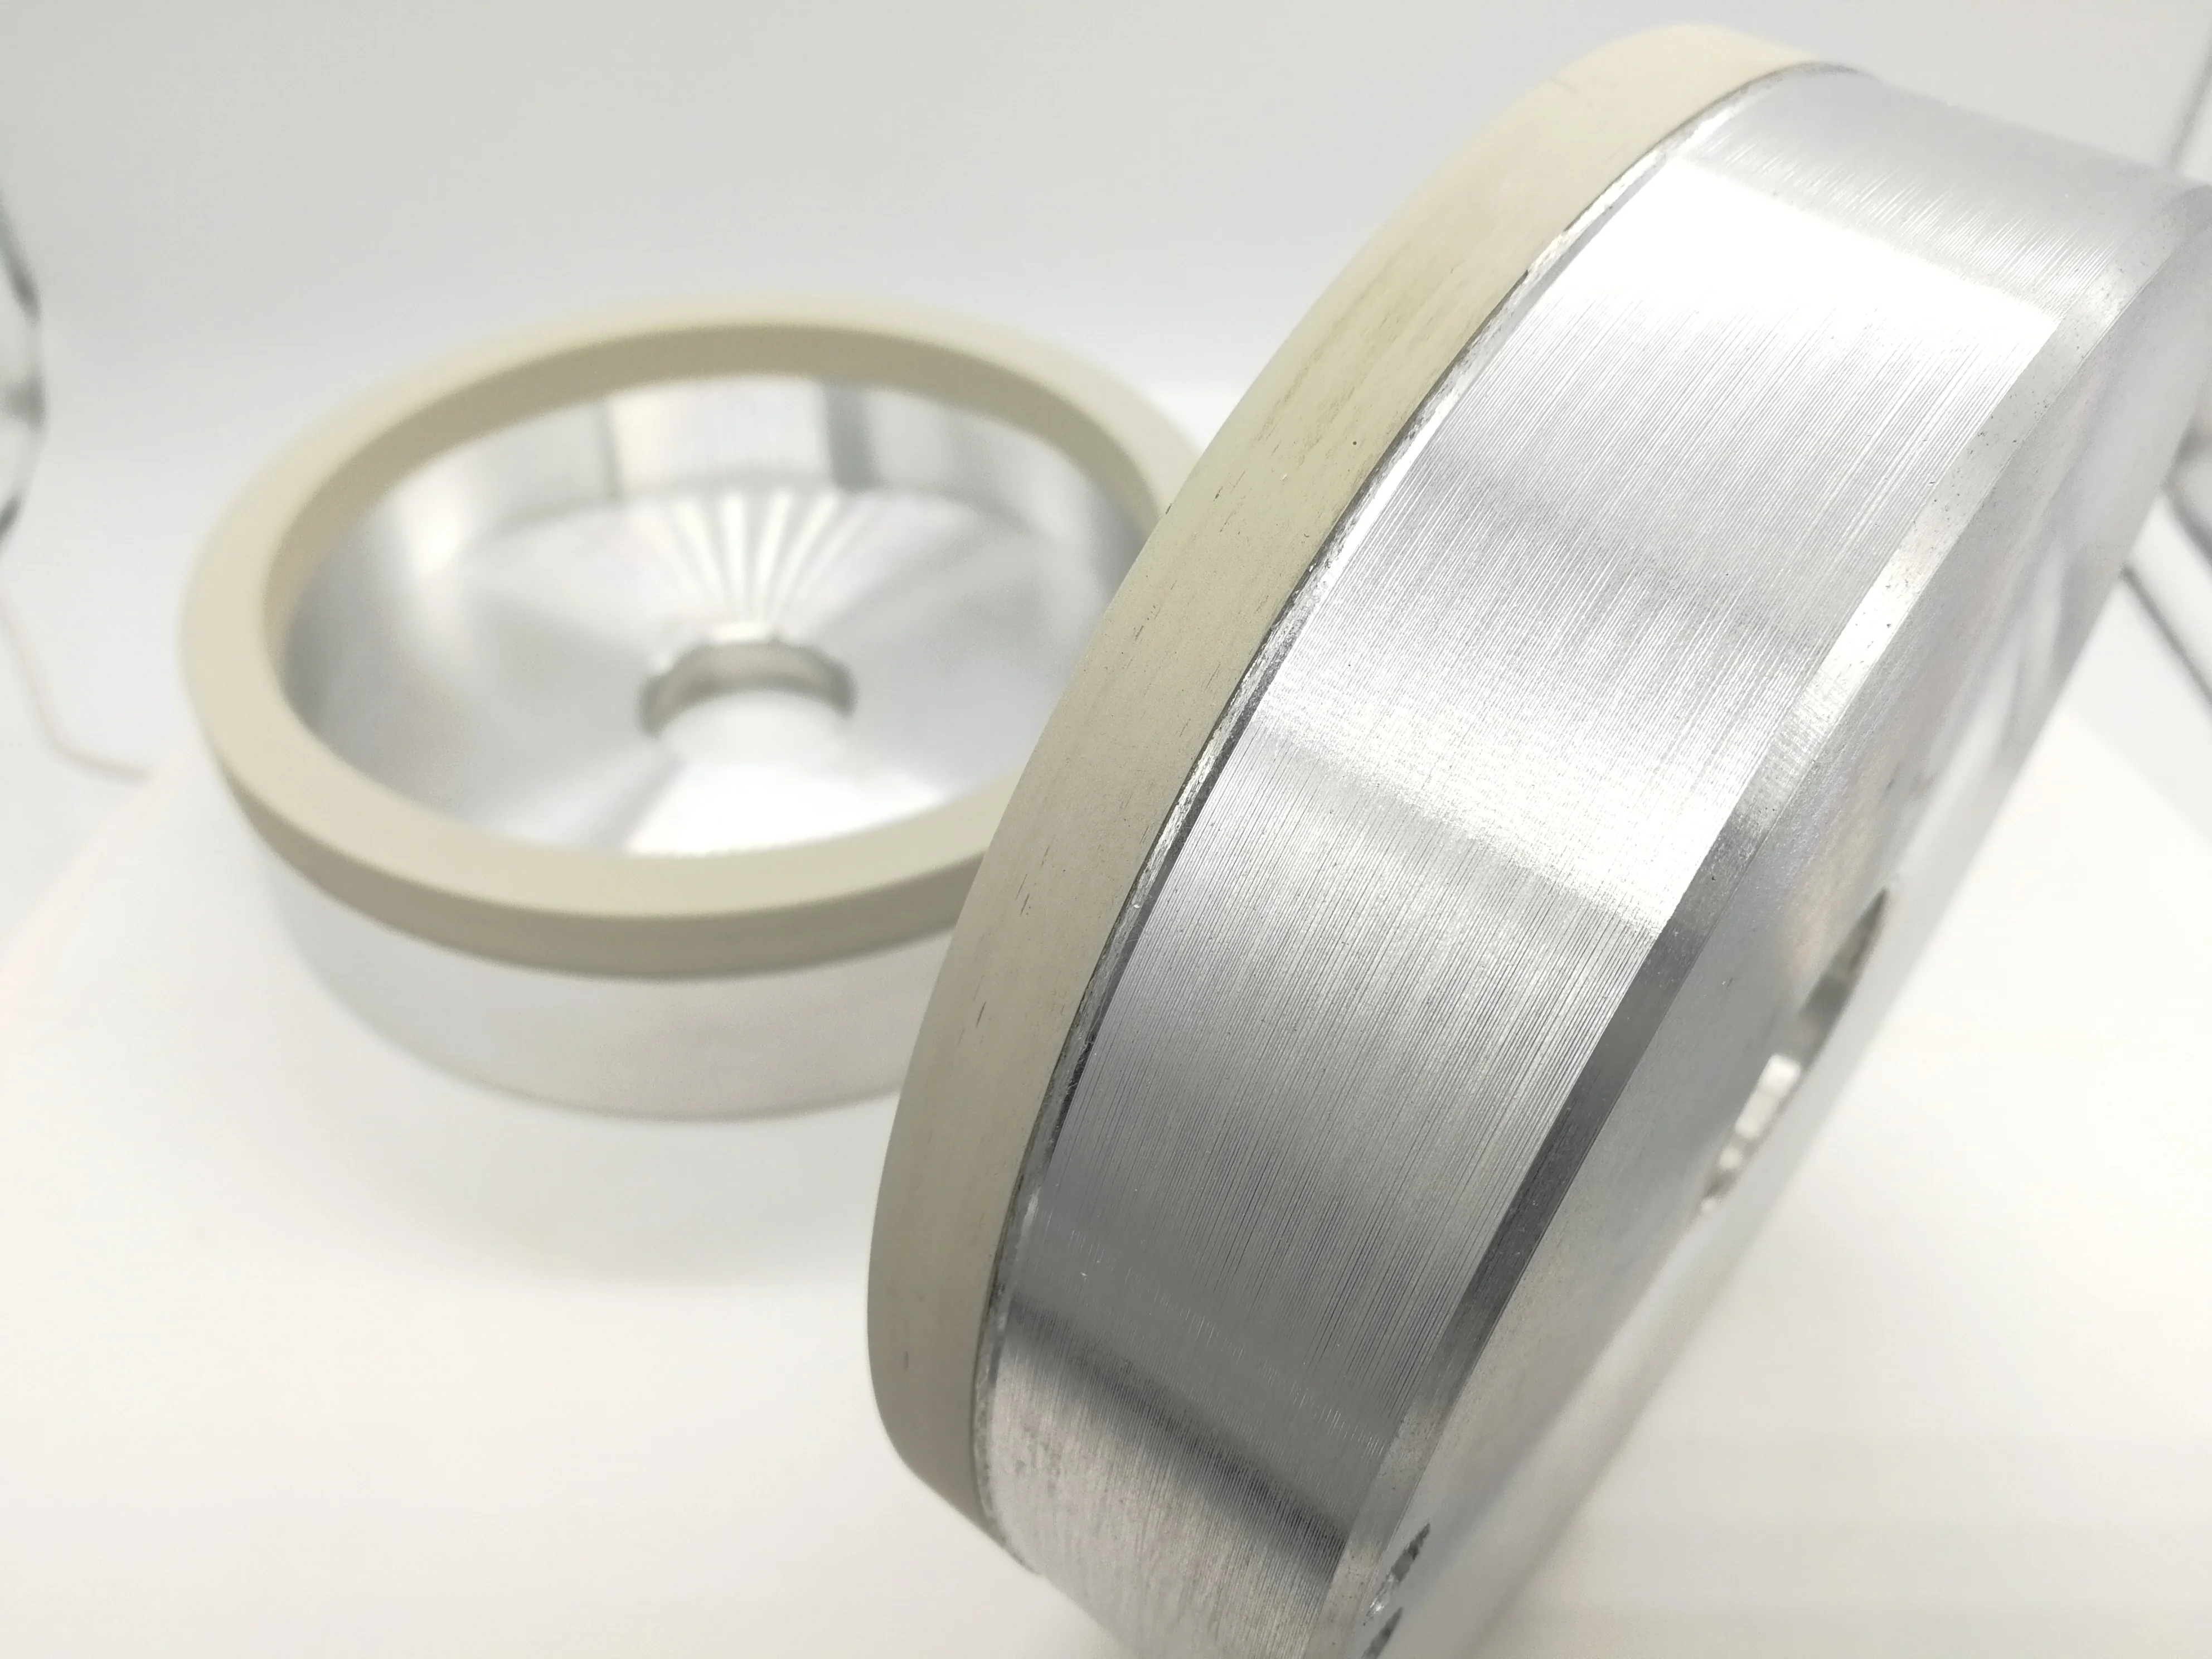 Алмазный шлифовальный круг для шлифования фотографий и пластинок с алмазным покрытием от AliExpress RU&CIS NEW